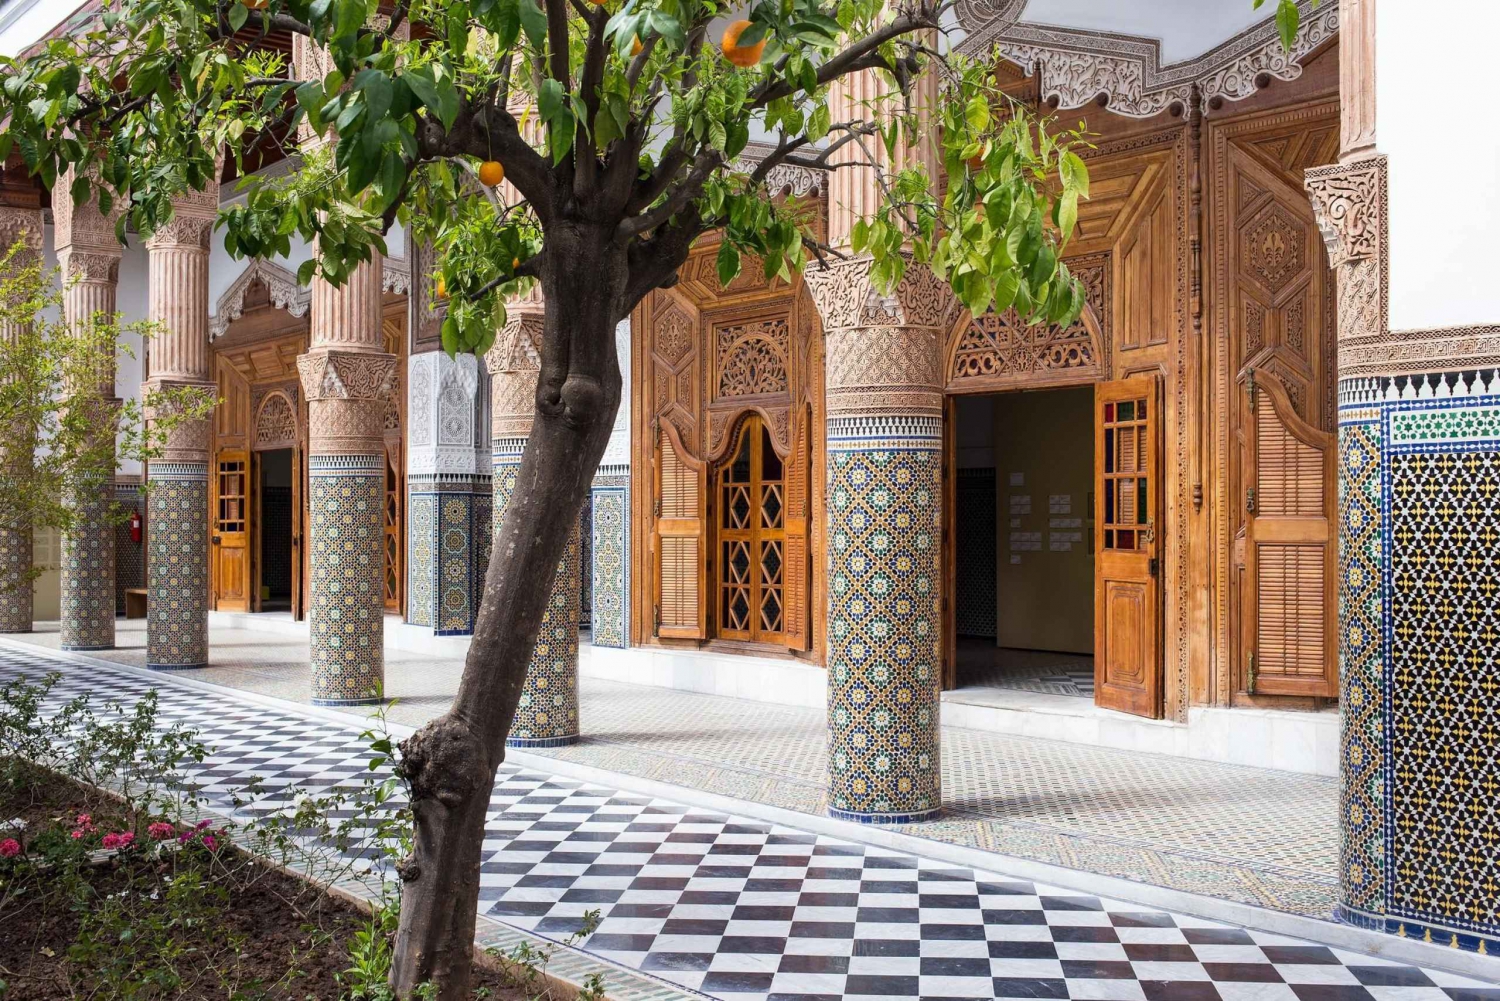 Marrakesz: Pałac, Muzeum, Madrasa i Medyna: najważniejsze atrakcje